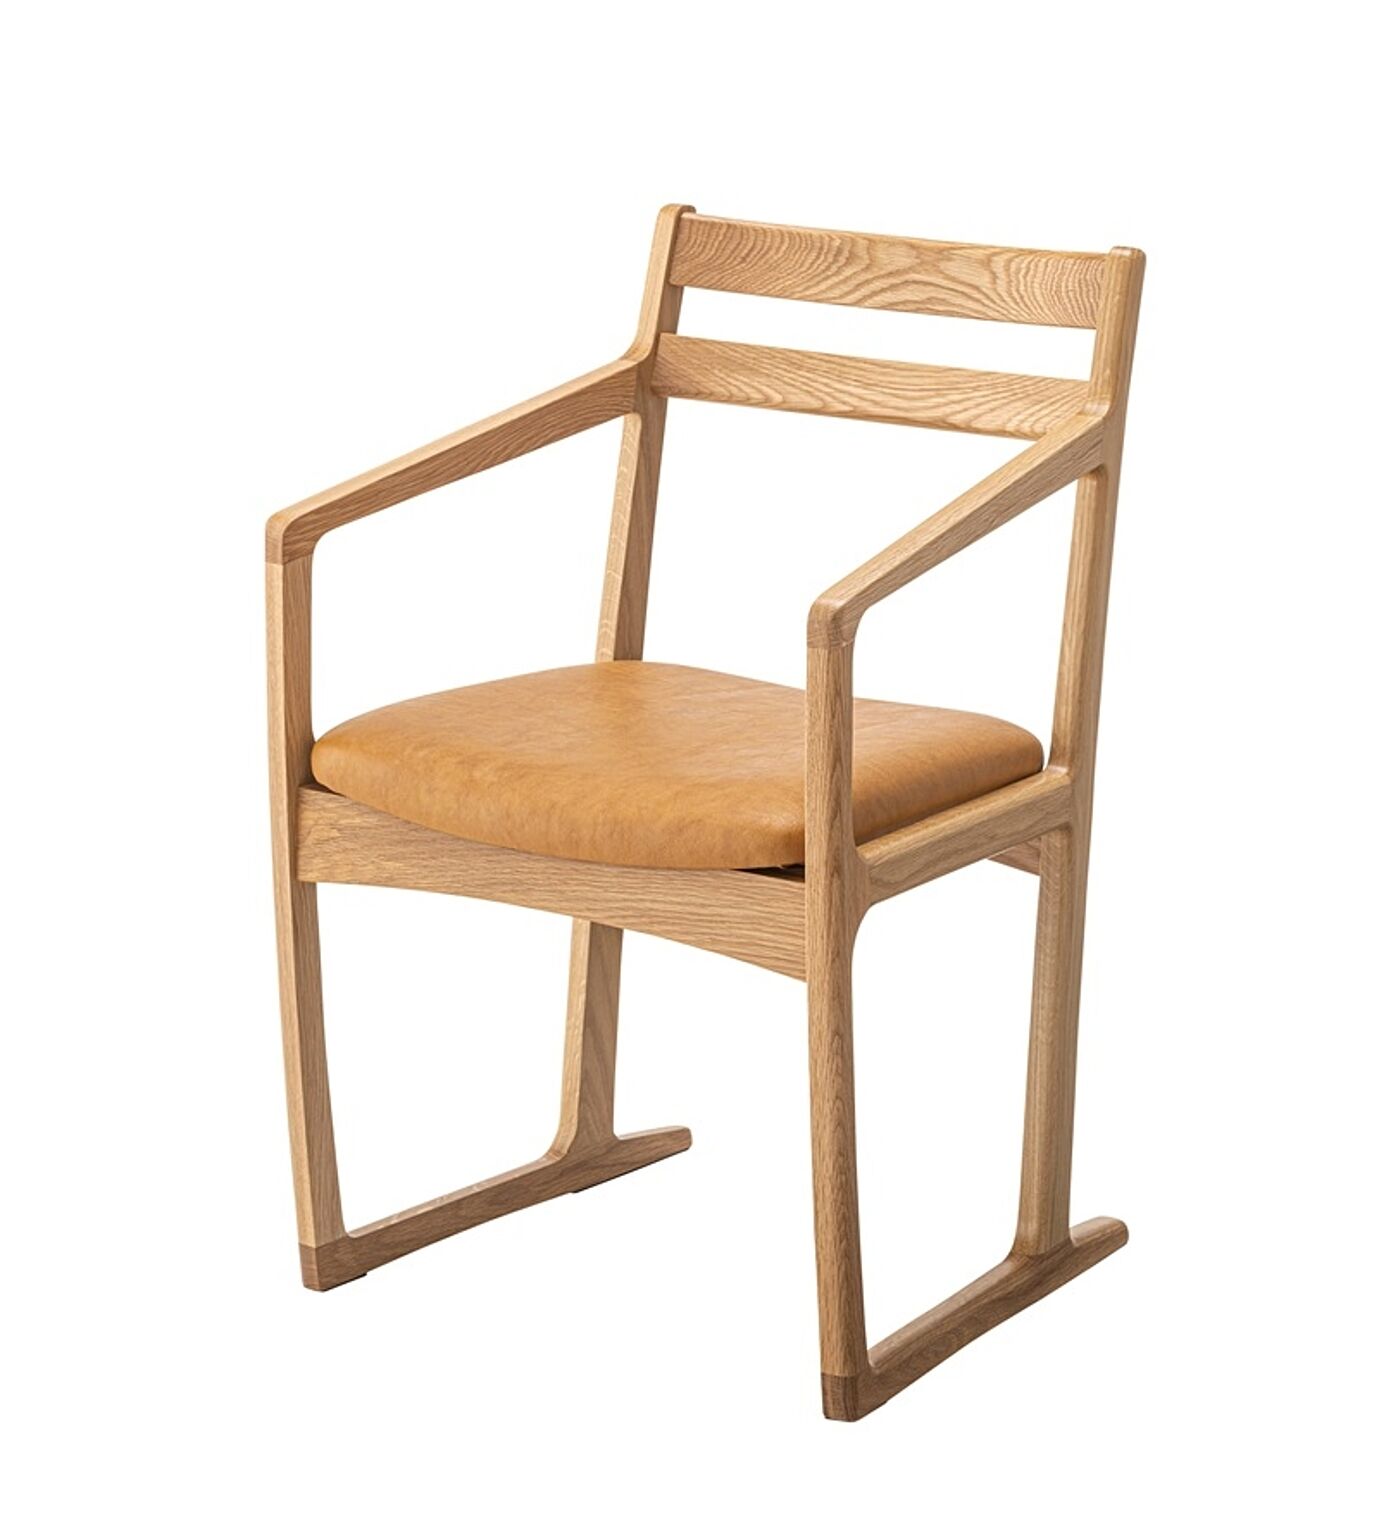 アームチェア W51×D52×H78×SH43 ナチュラル チェア ダイニングチェア 椅子 アームチェア 肘付き ソリ脚 天然木 国産 日本製 曲線美 木製 ナチュラル シンプル おしゃれ